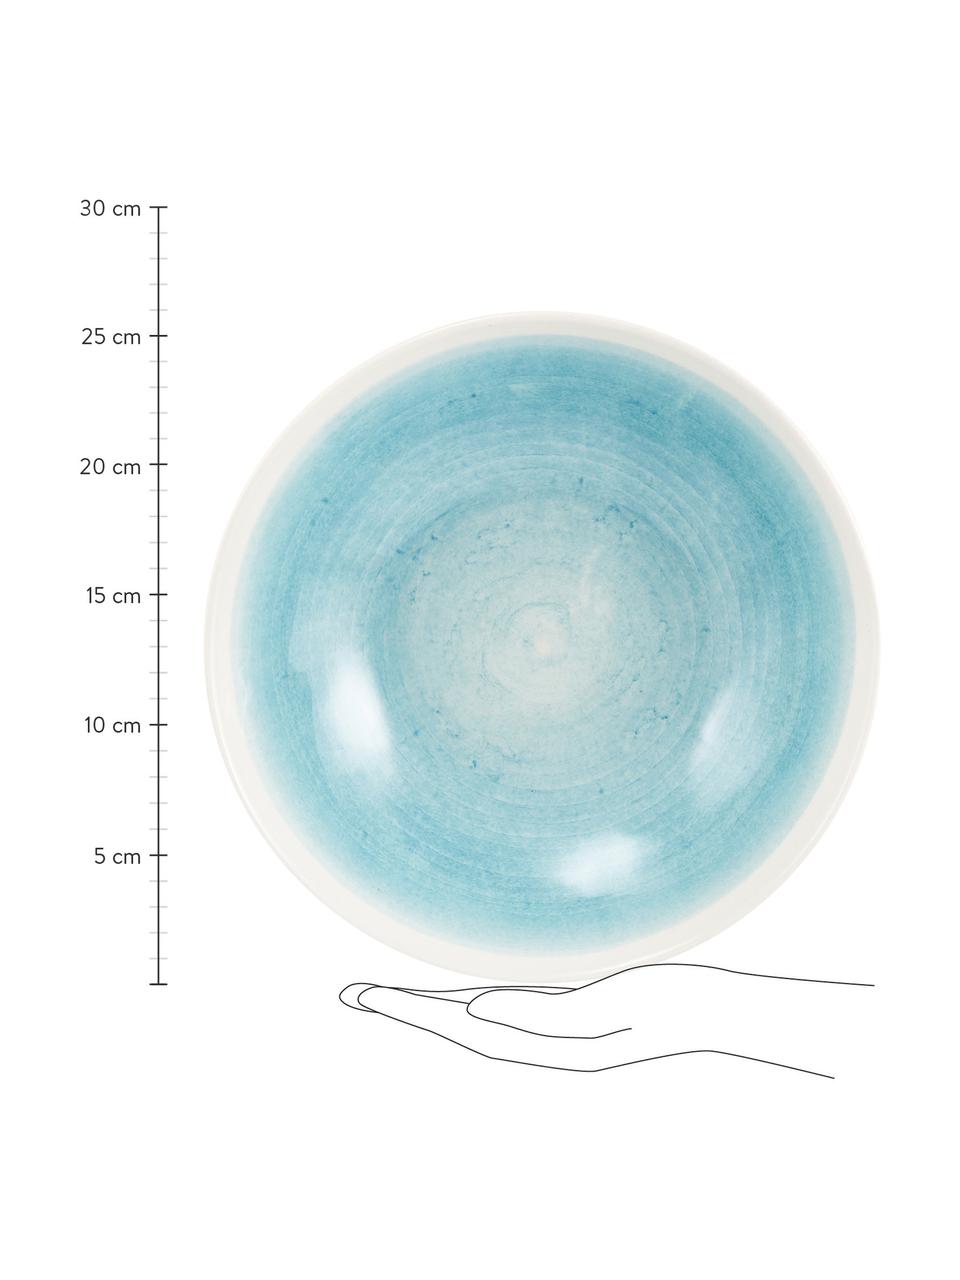 Saladier artisanal céramique Pure, Ø 26 cm, Céramique, Bleu, blanc, Ø 26 x haut. 7 cm